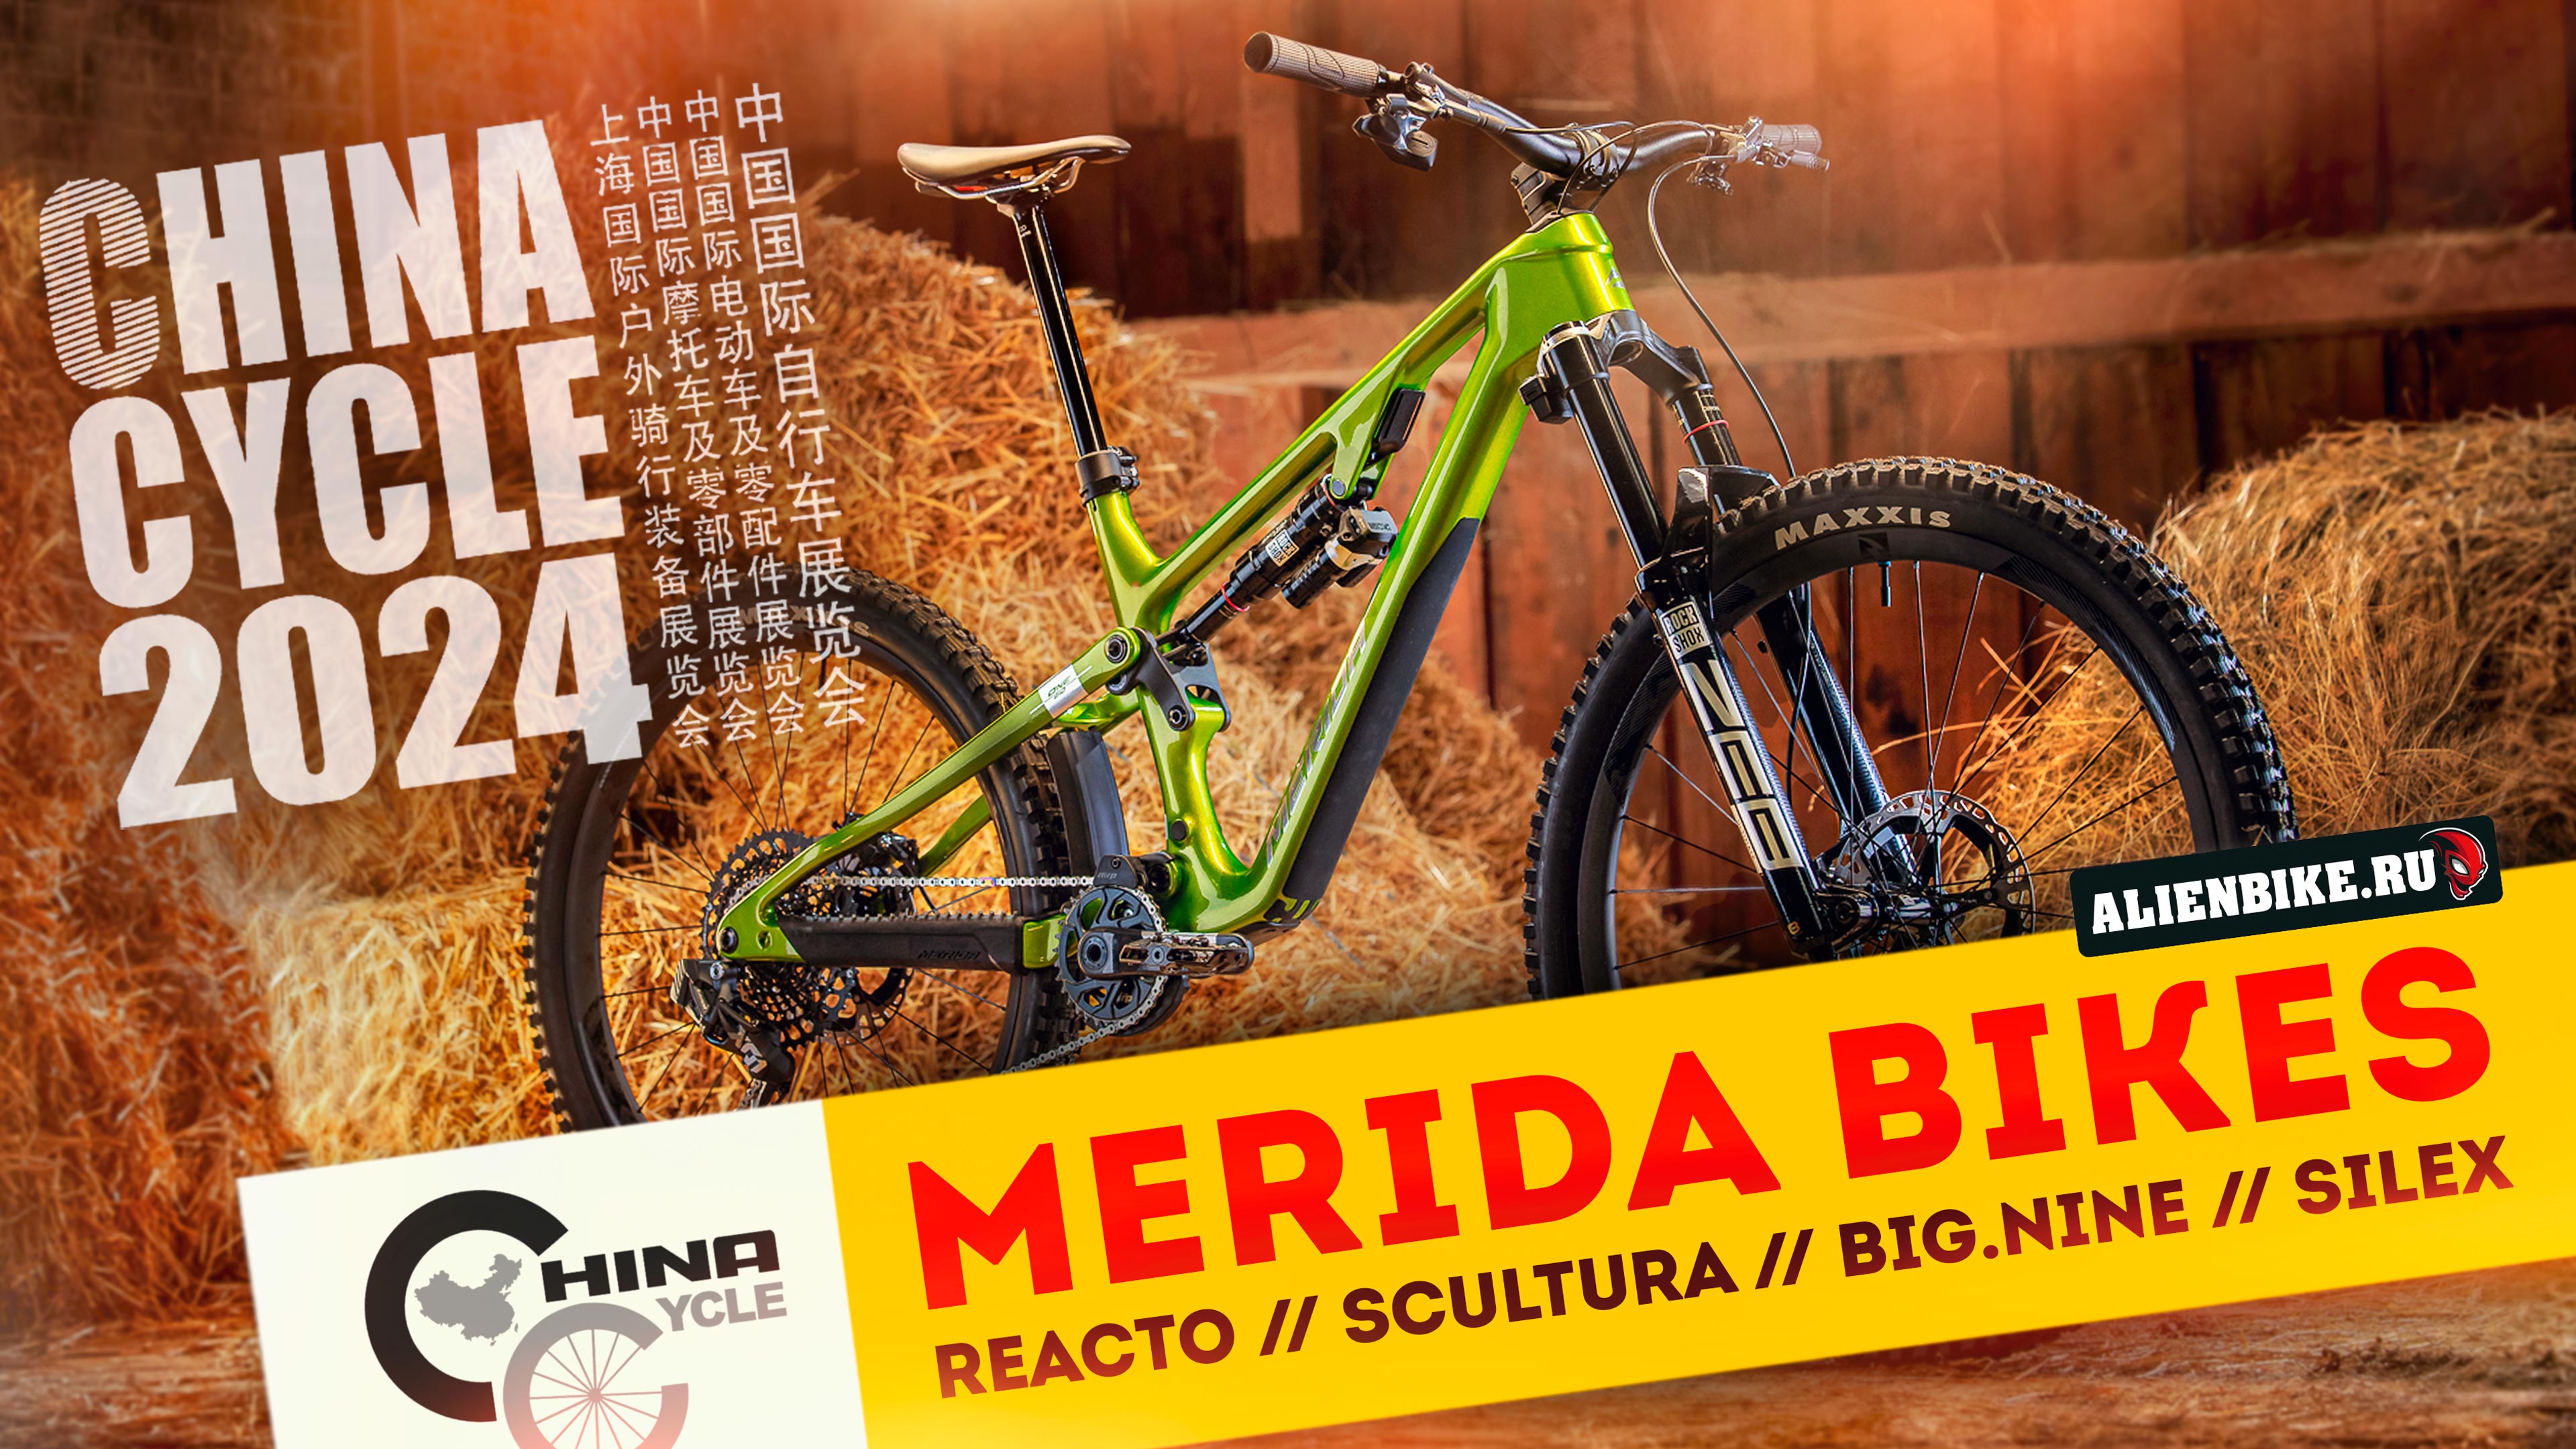 Новые велосипеды Merida | Reacto // Scultura // Big.Nine // One-Sixty // Silex | China Cycle 2024